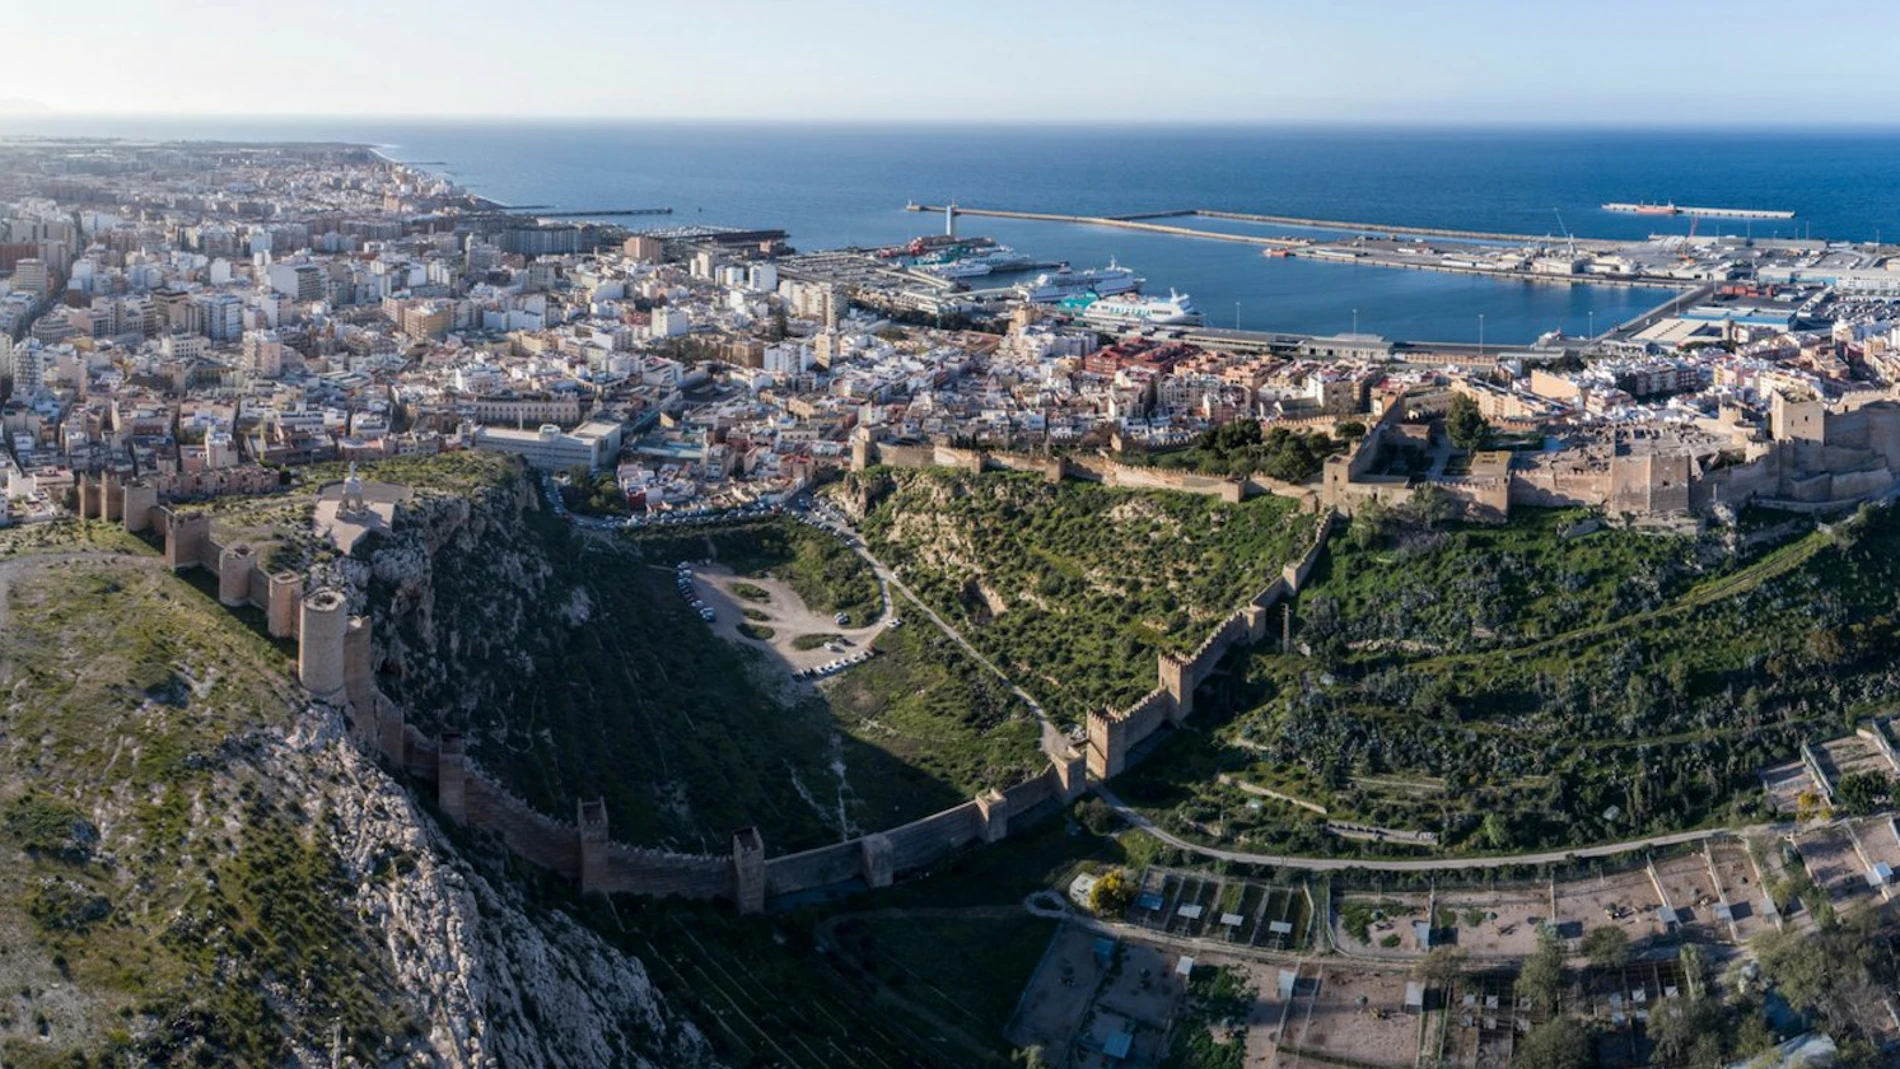 La Alcazaba de Almería es uno de los conjuntos monumentales y arqueológicos andalusíes más importantes de la península ibérica.